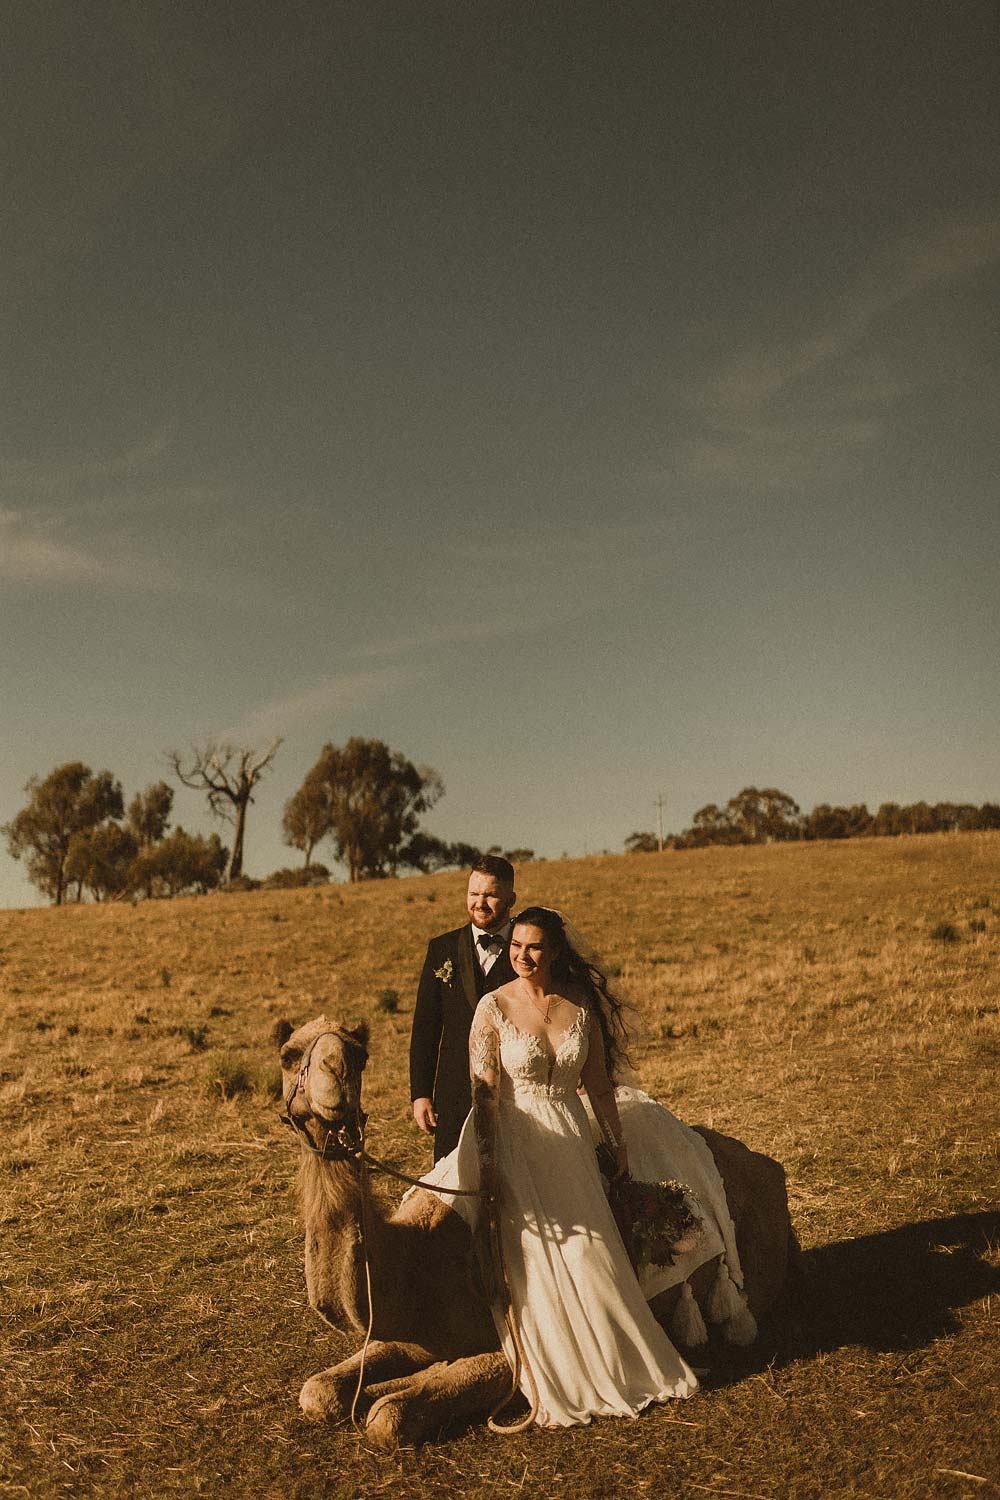 Sydney-wedding-photographer-couple-sittingowith-camel-6